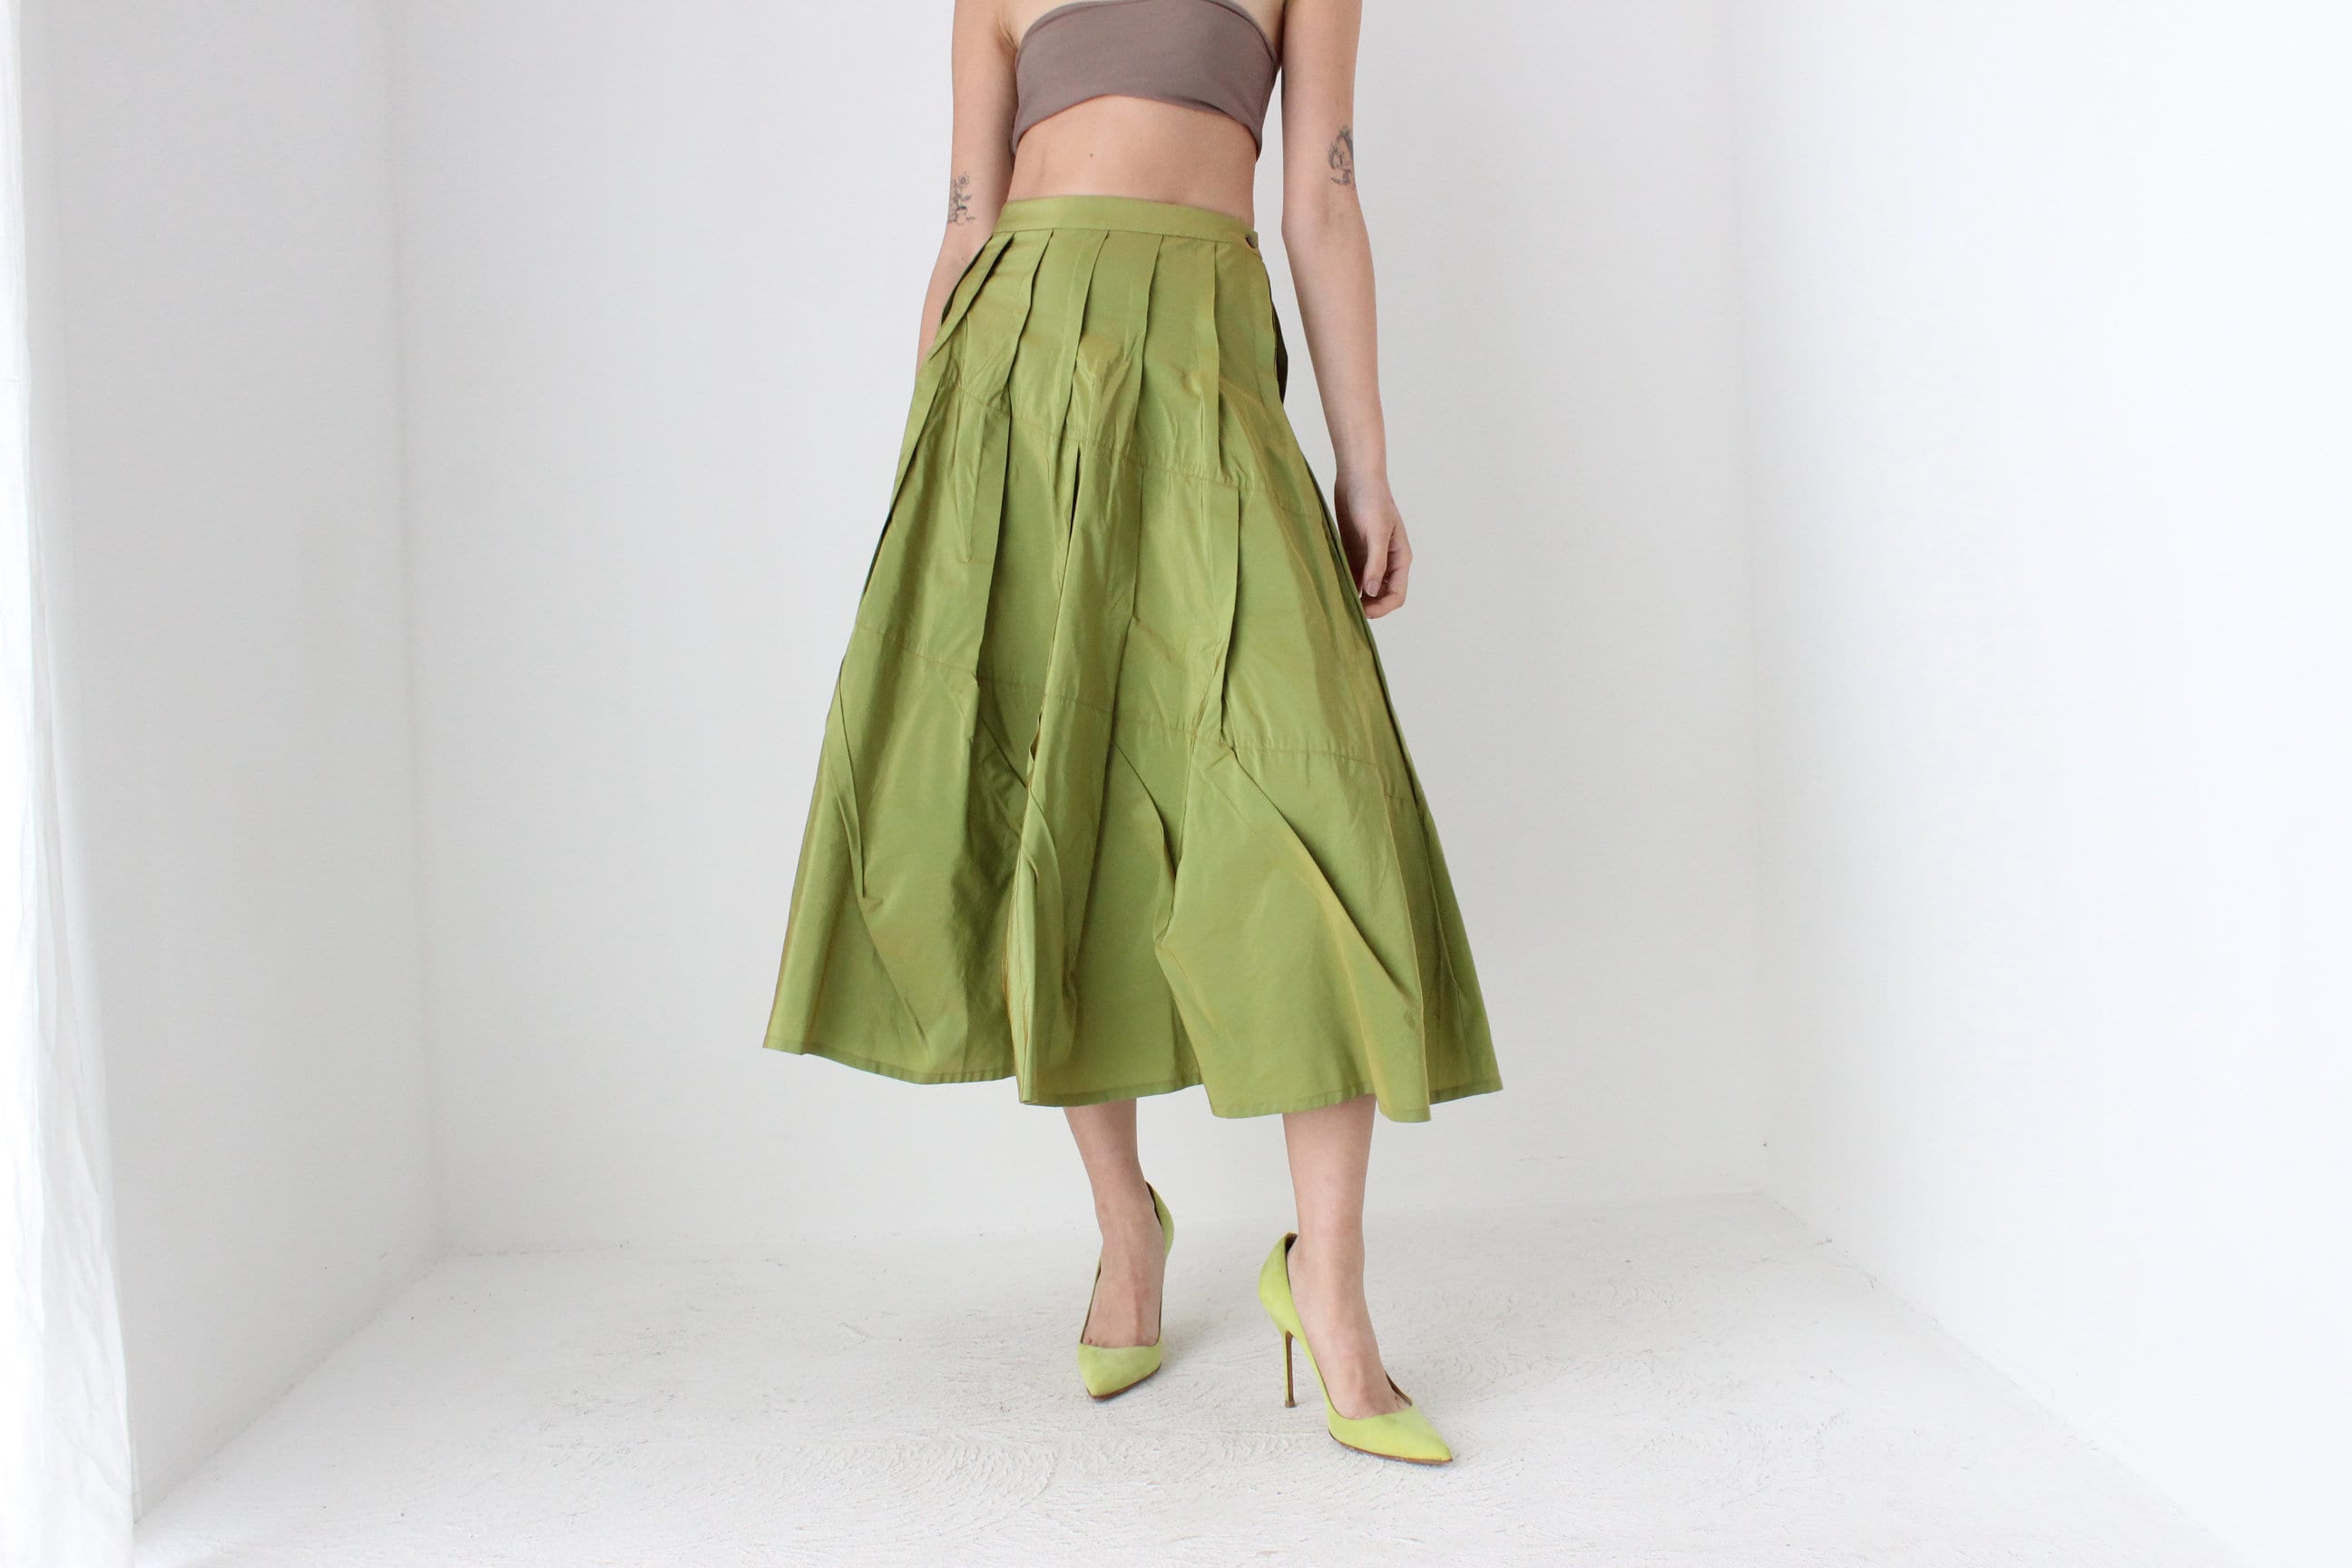 Y2K Metallic Green Structural Taffeta High Waist Skirt